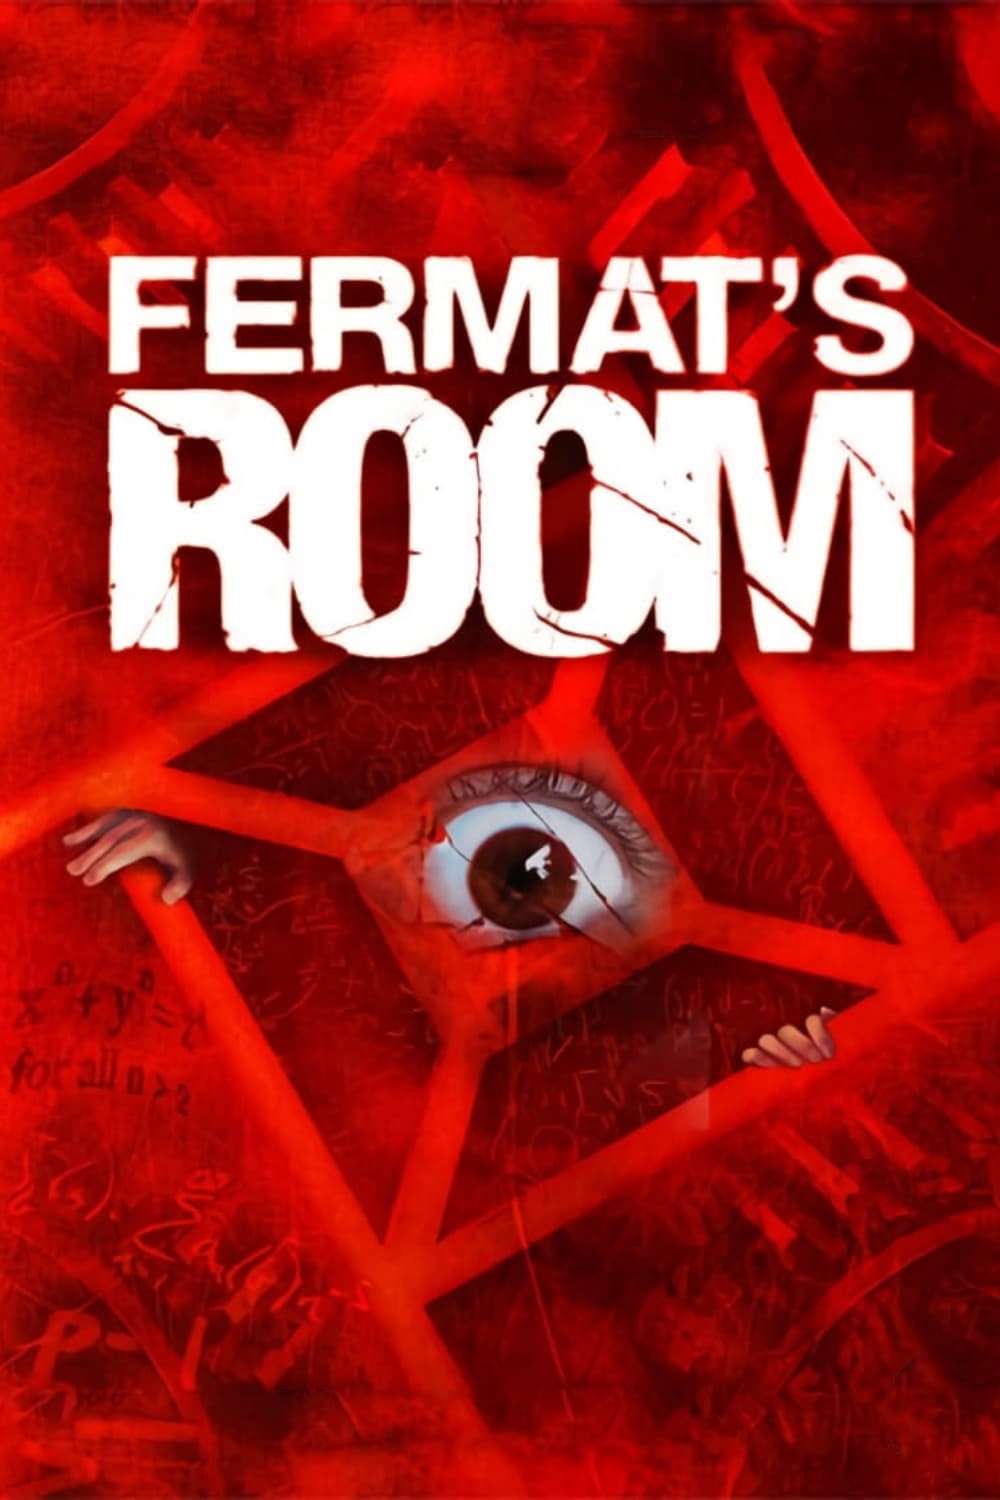  Căn Phòng Của Fermat -  Căn Phòng Của Fermat (2007)